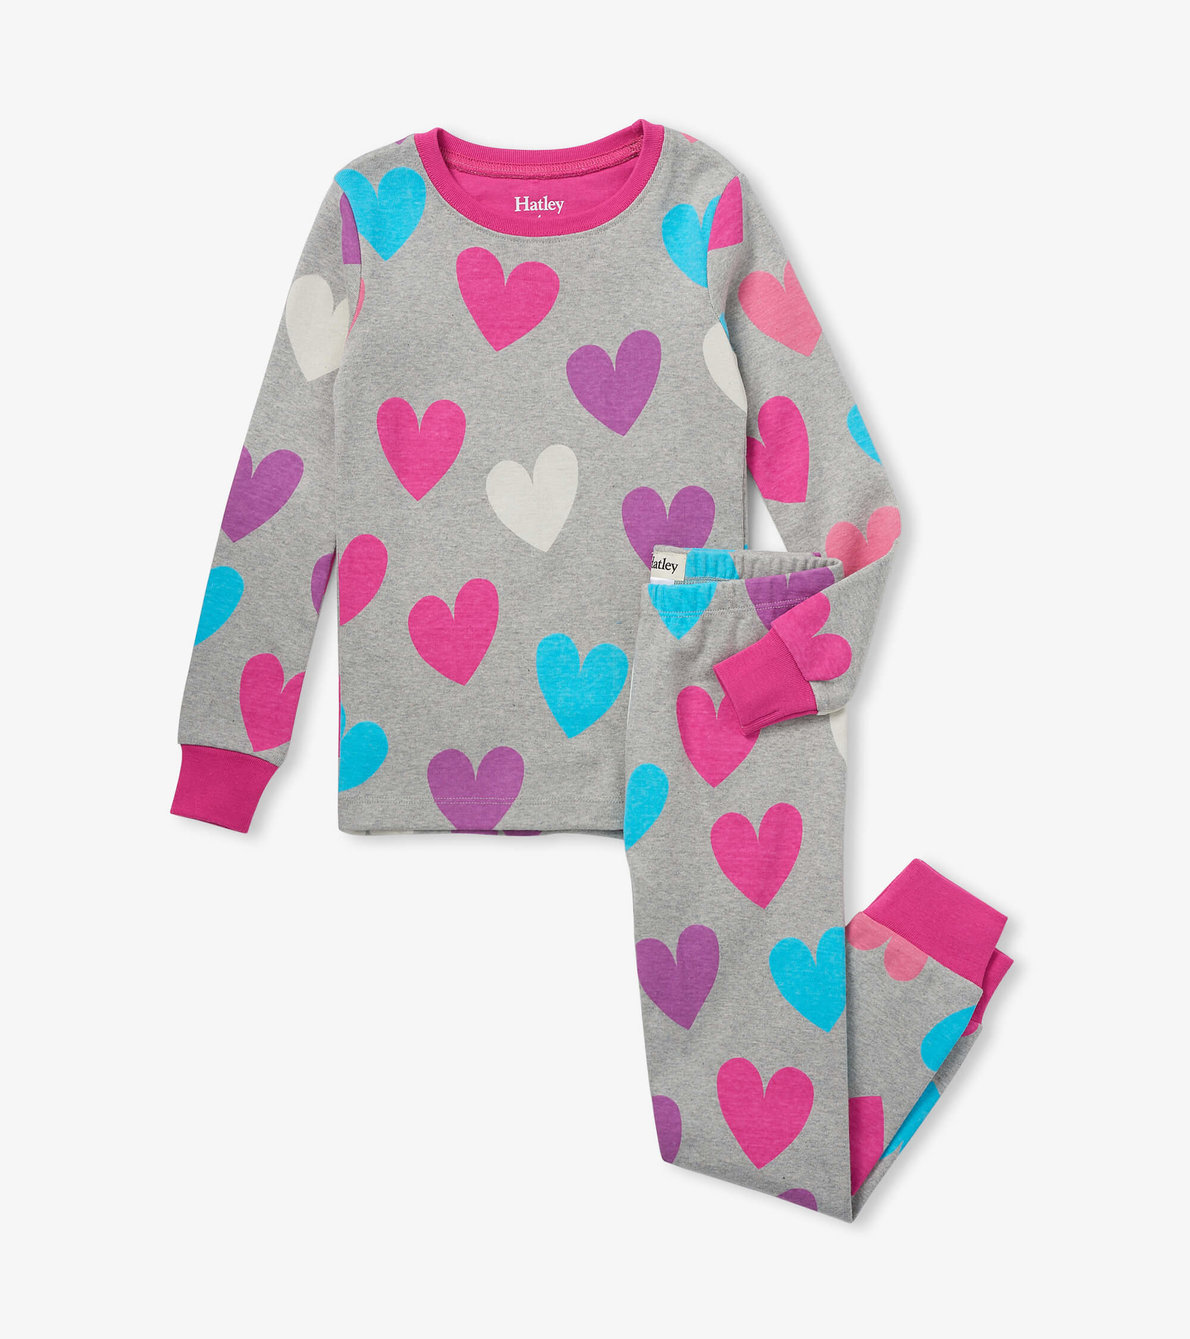 View larger image of Fun Hearts Kids Organic Cotton Pajama Set